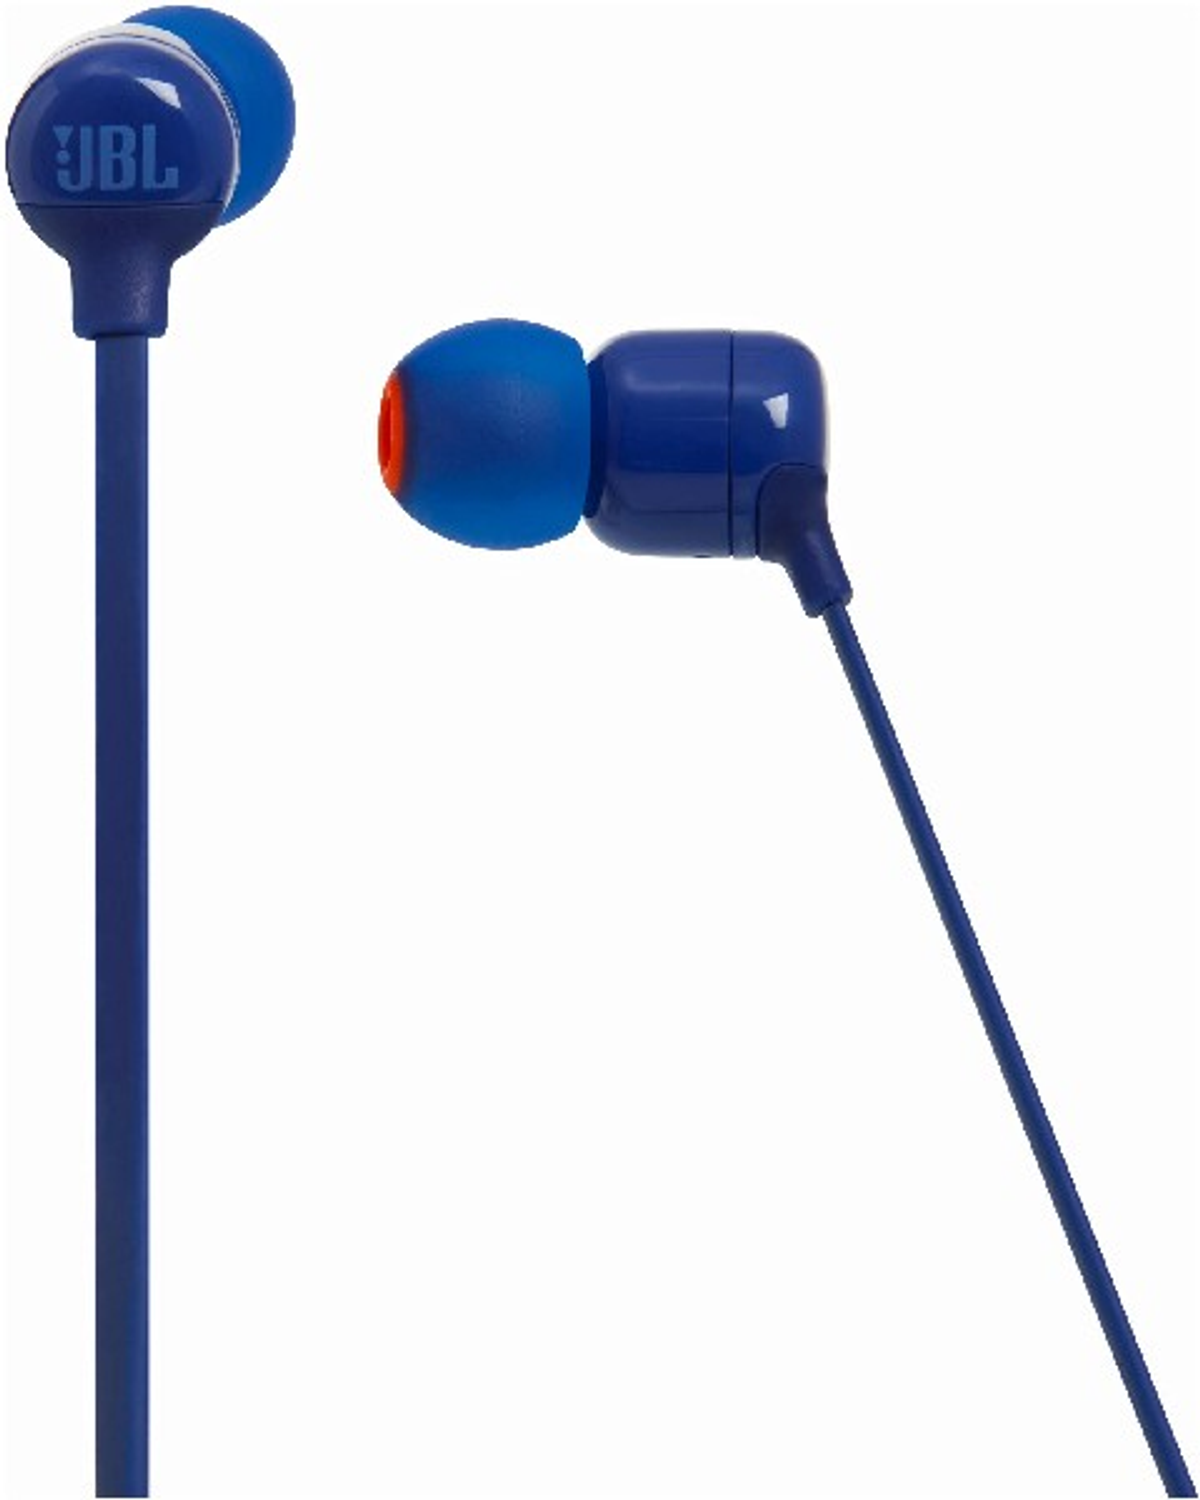 IN-EAR WIRELESS Bluetooth JBL CANAL Kopfhörer T Blau BT BLU HEADPHONES, In-ear 110